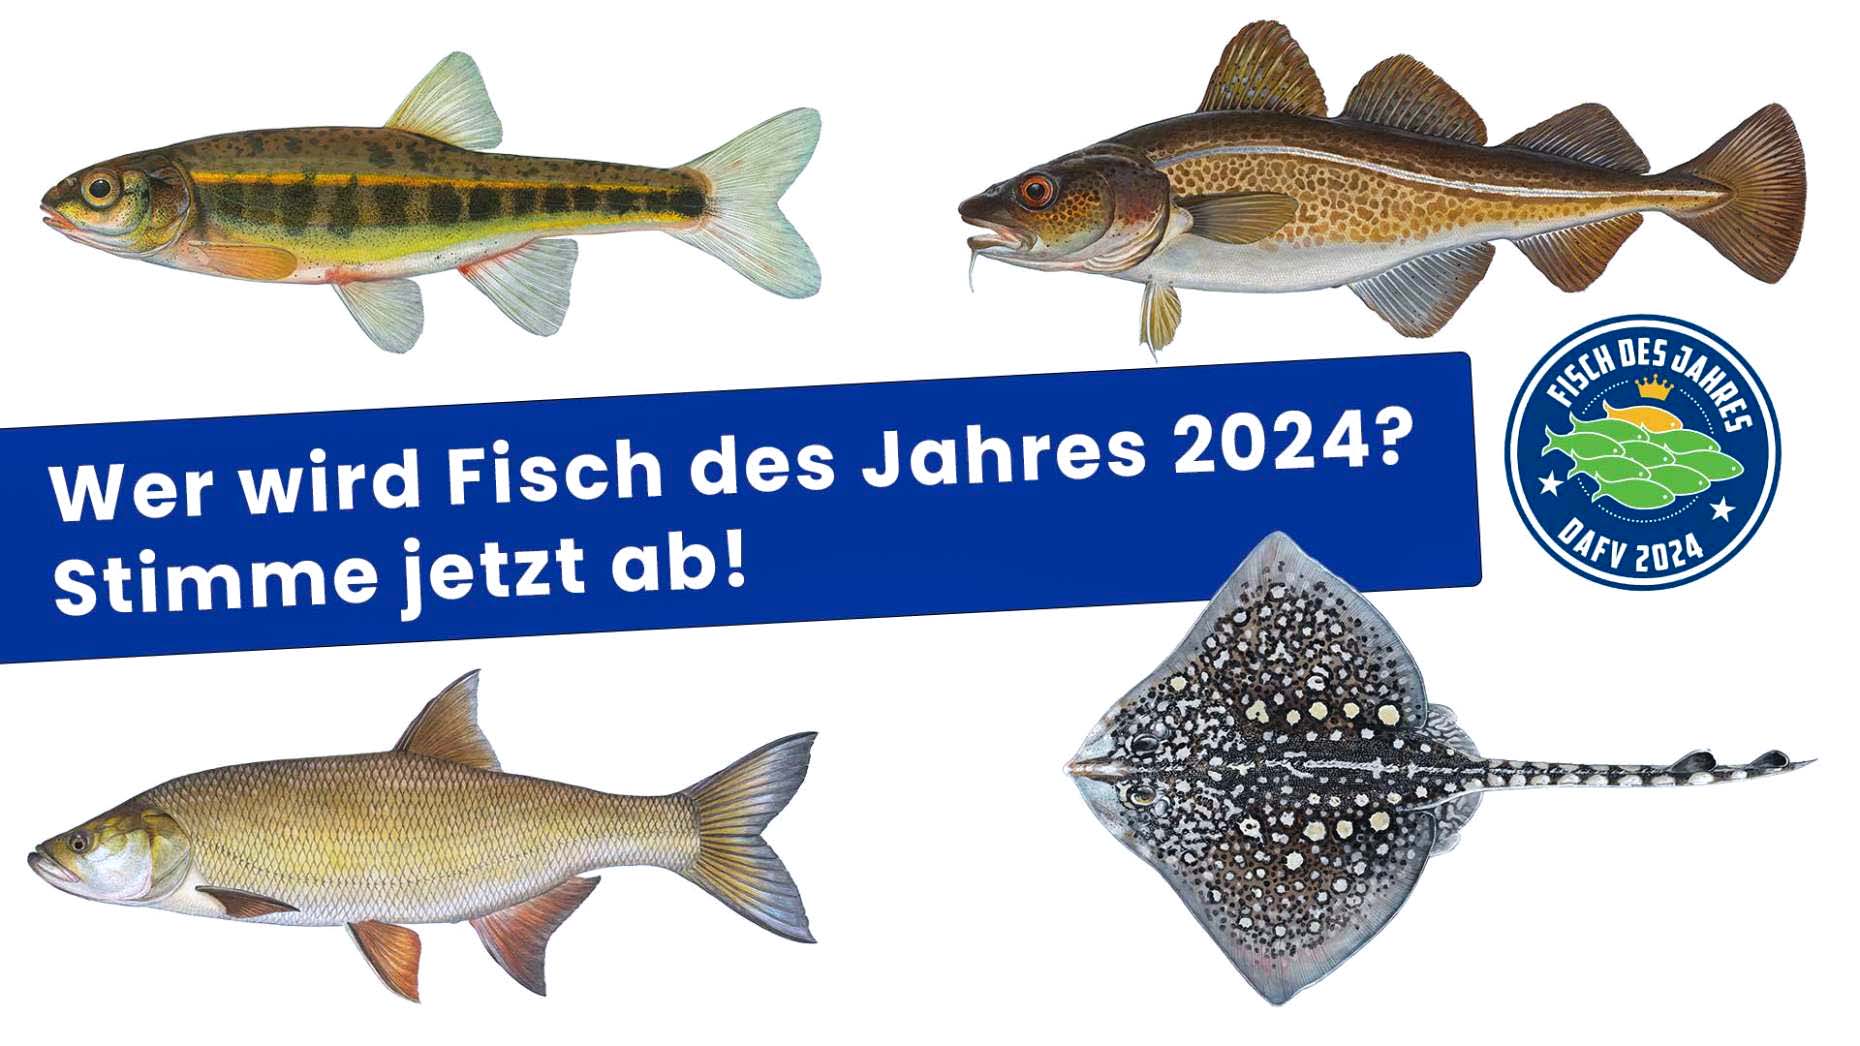 "Fisch des Jahres 2024"